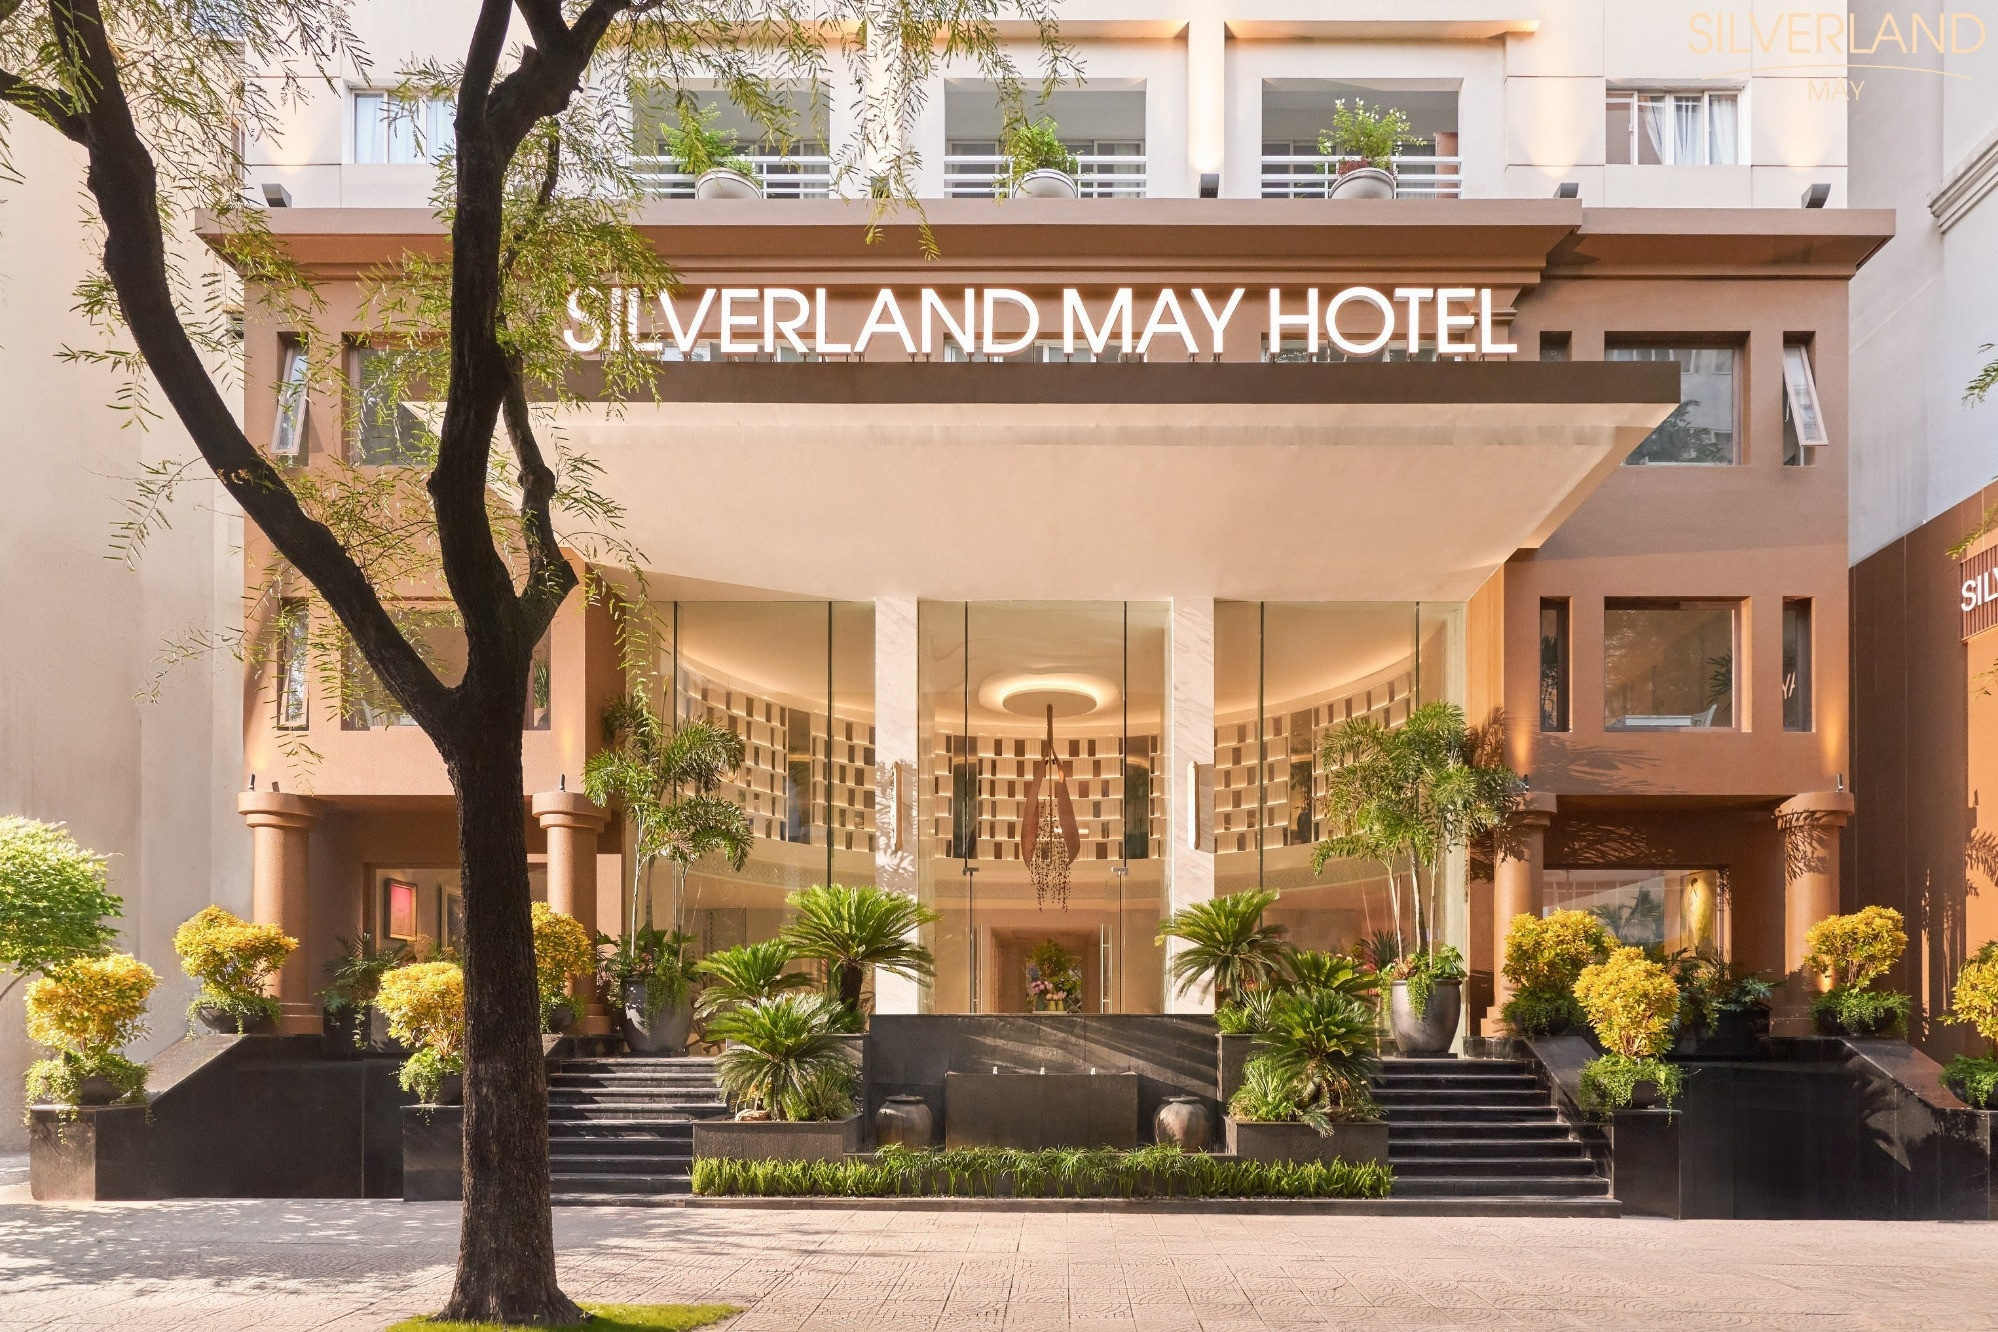 Silverland Mây Hotel - không gian yên bình giữa lòng thành phố